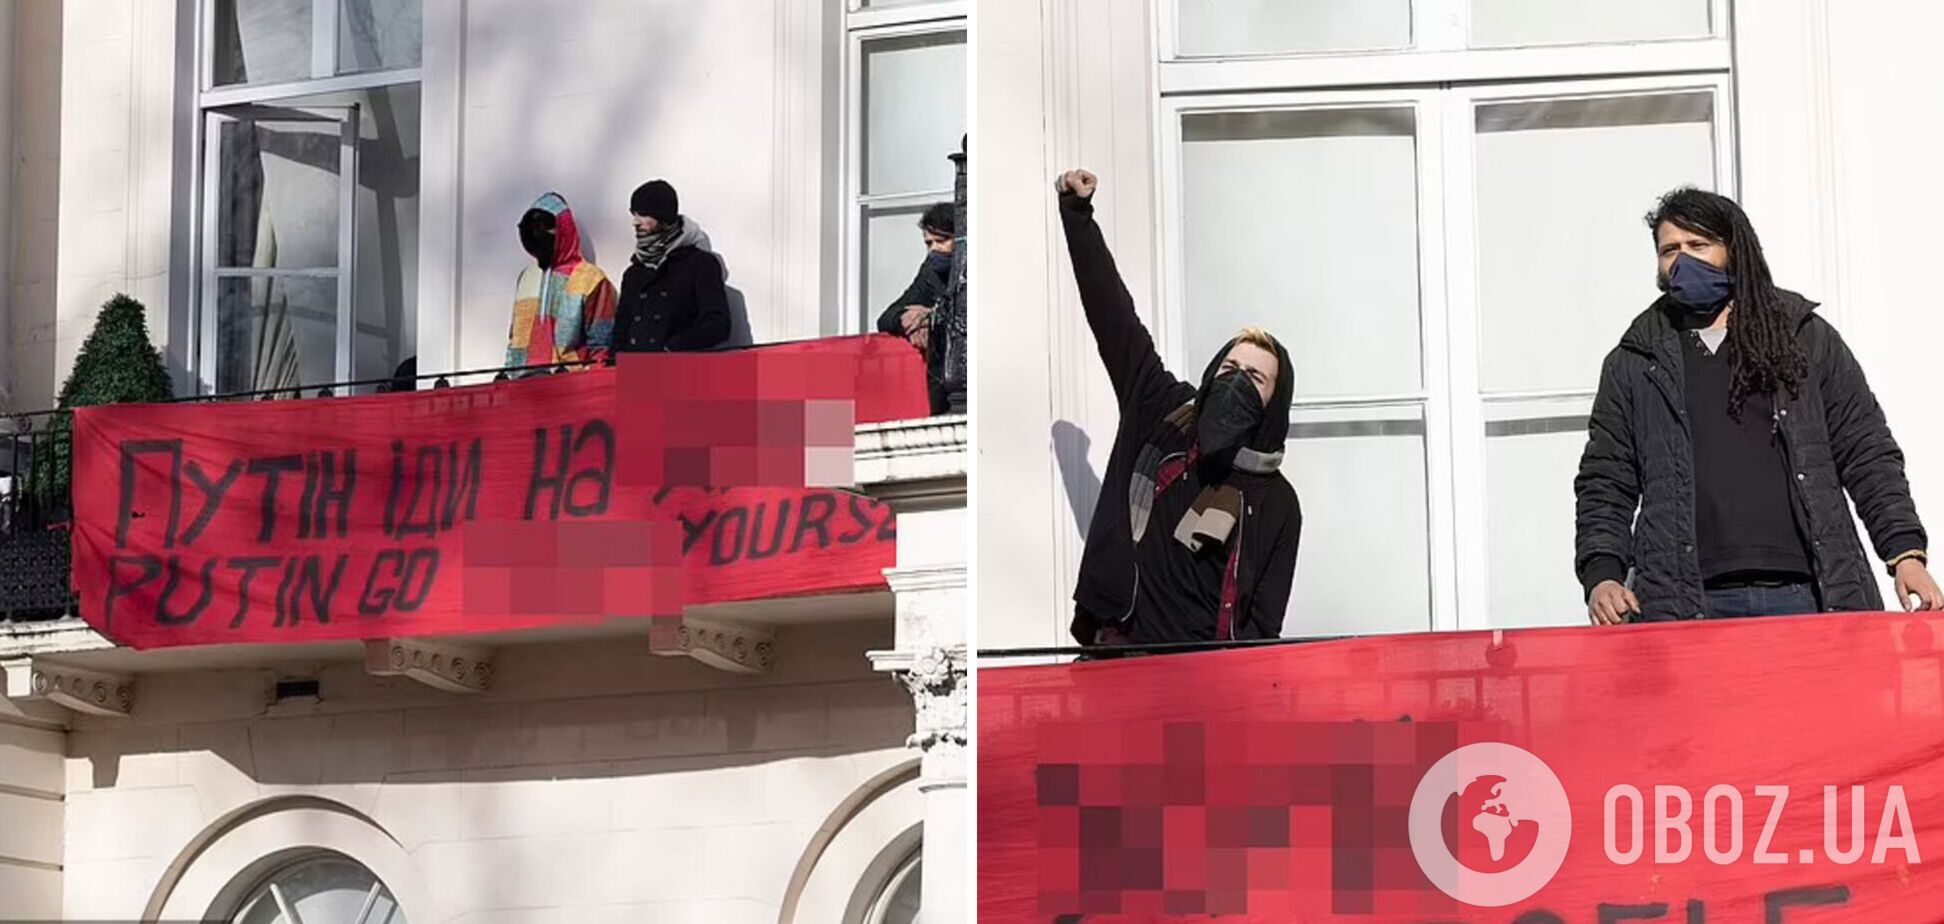 У Лондоні протестувальники увірвалися в будинок путінського олігарха Дерипаски та вивісили там український прапор. Фото